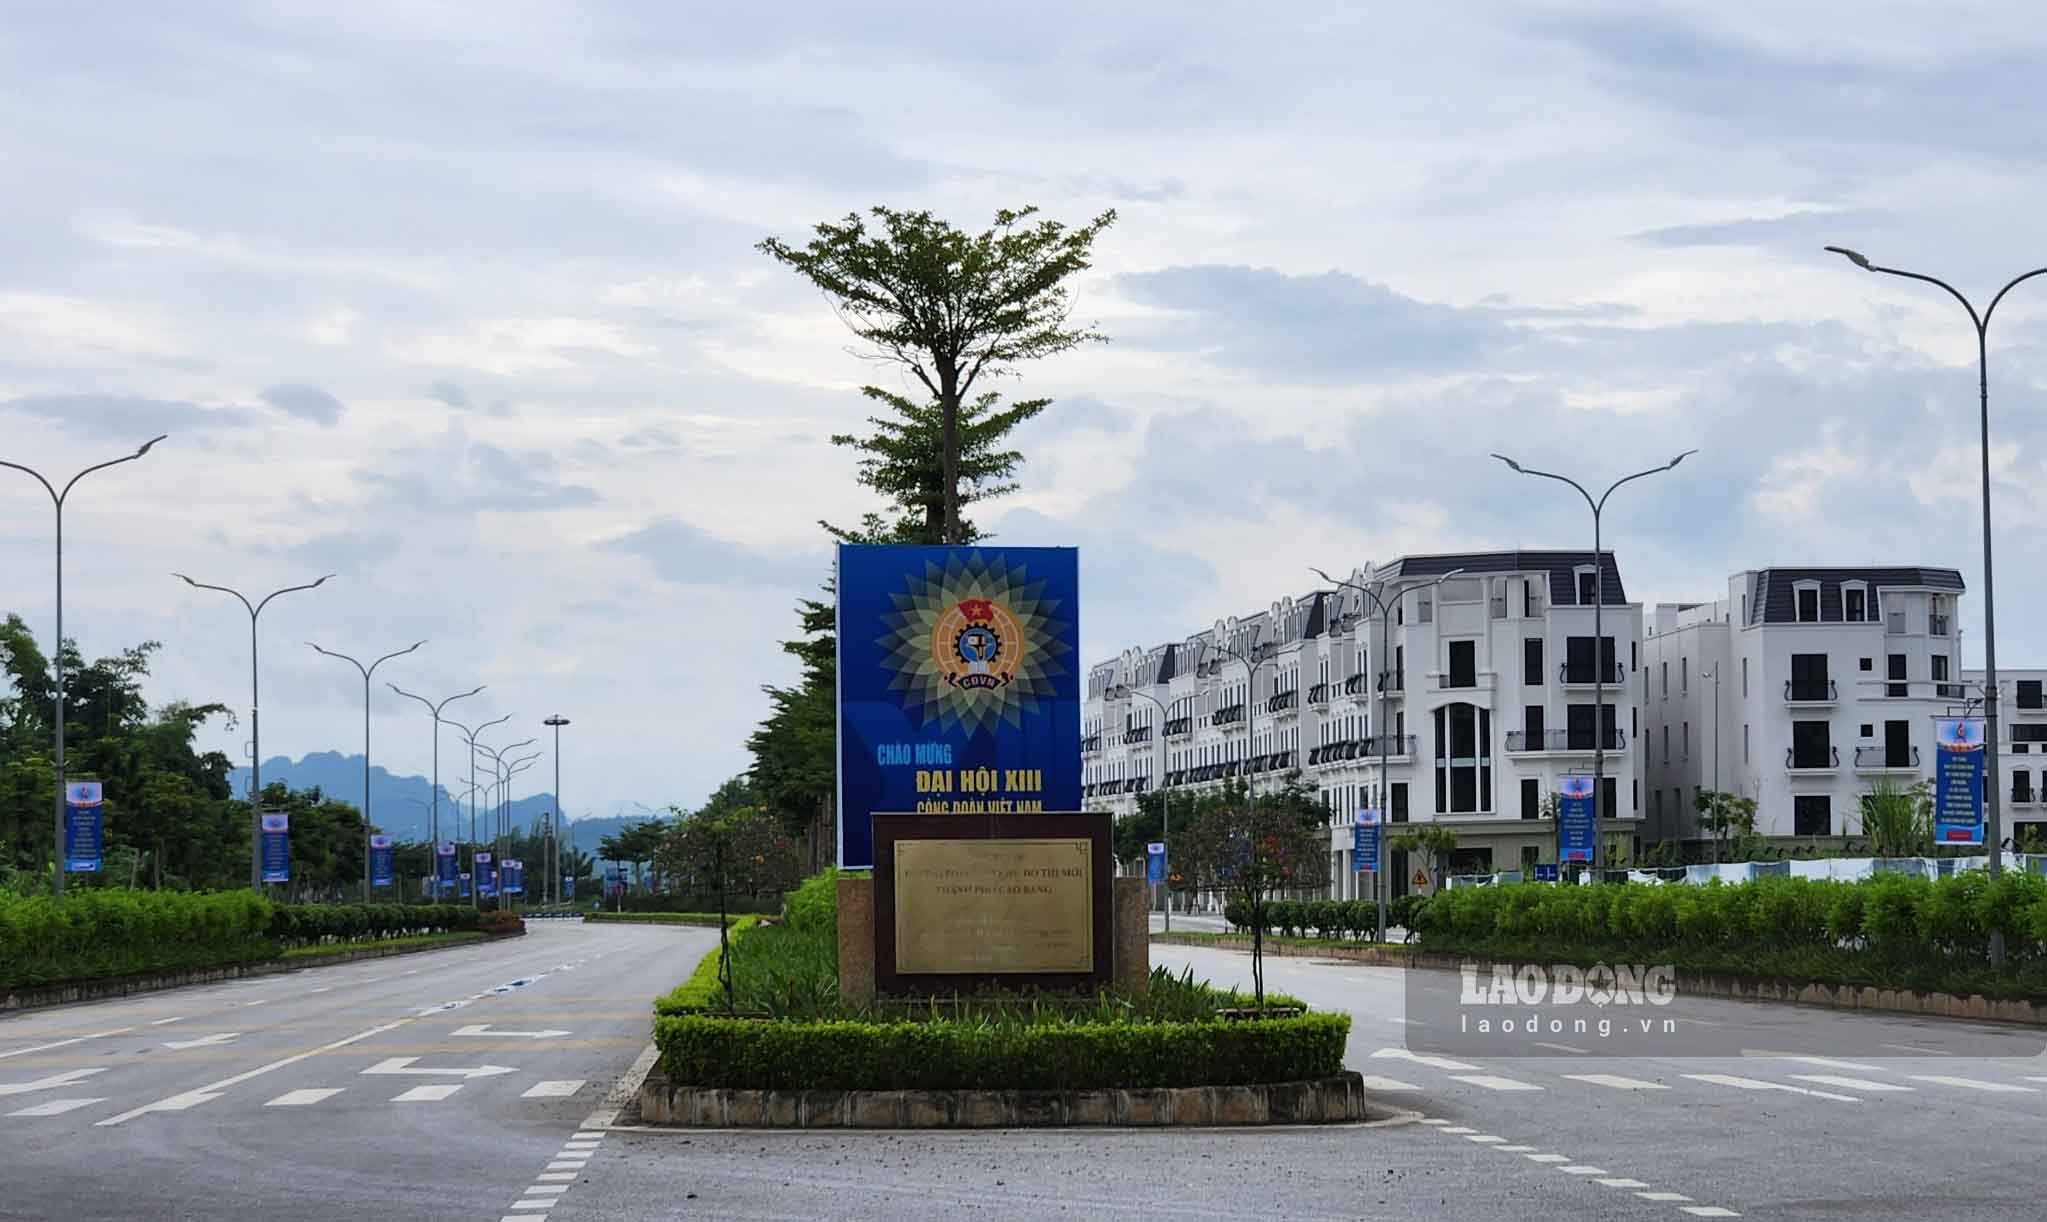 Khu vực đường 58 (đường Võ Nguyên Giáp) - trục đường lớn nhất TP Cao Bằng các băng rôn, khẩu hiệu được chăng kín. Ảnh: Tân Văn.